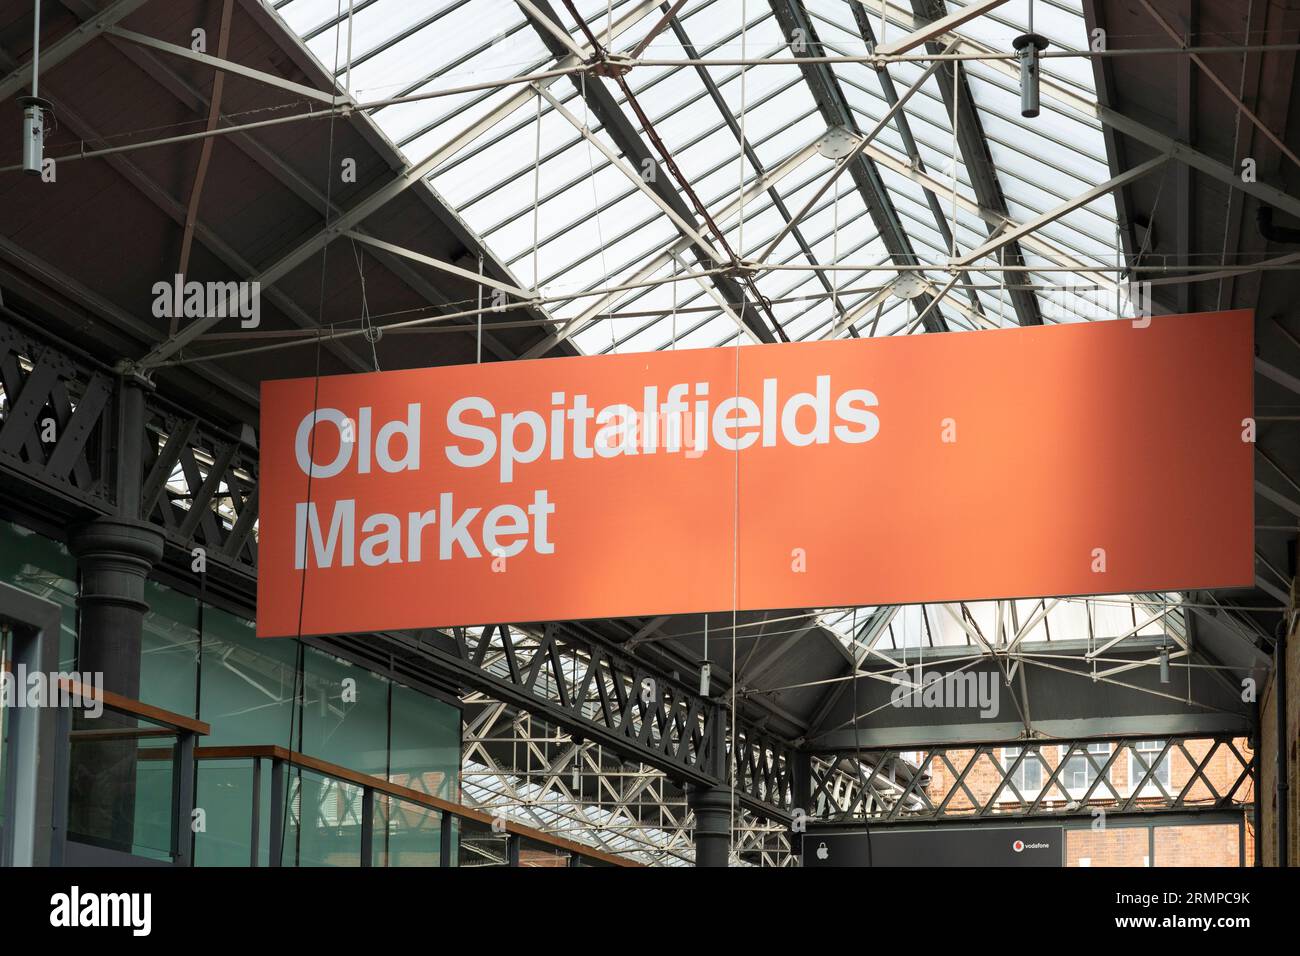 Ein Hängeschild, auf dem der Old Spitalfields Market in Old Spitalfields steht, überdachte die Markthalle. Spitalfields, London, Großbritannien Stockfoto